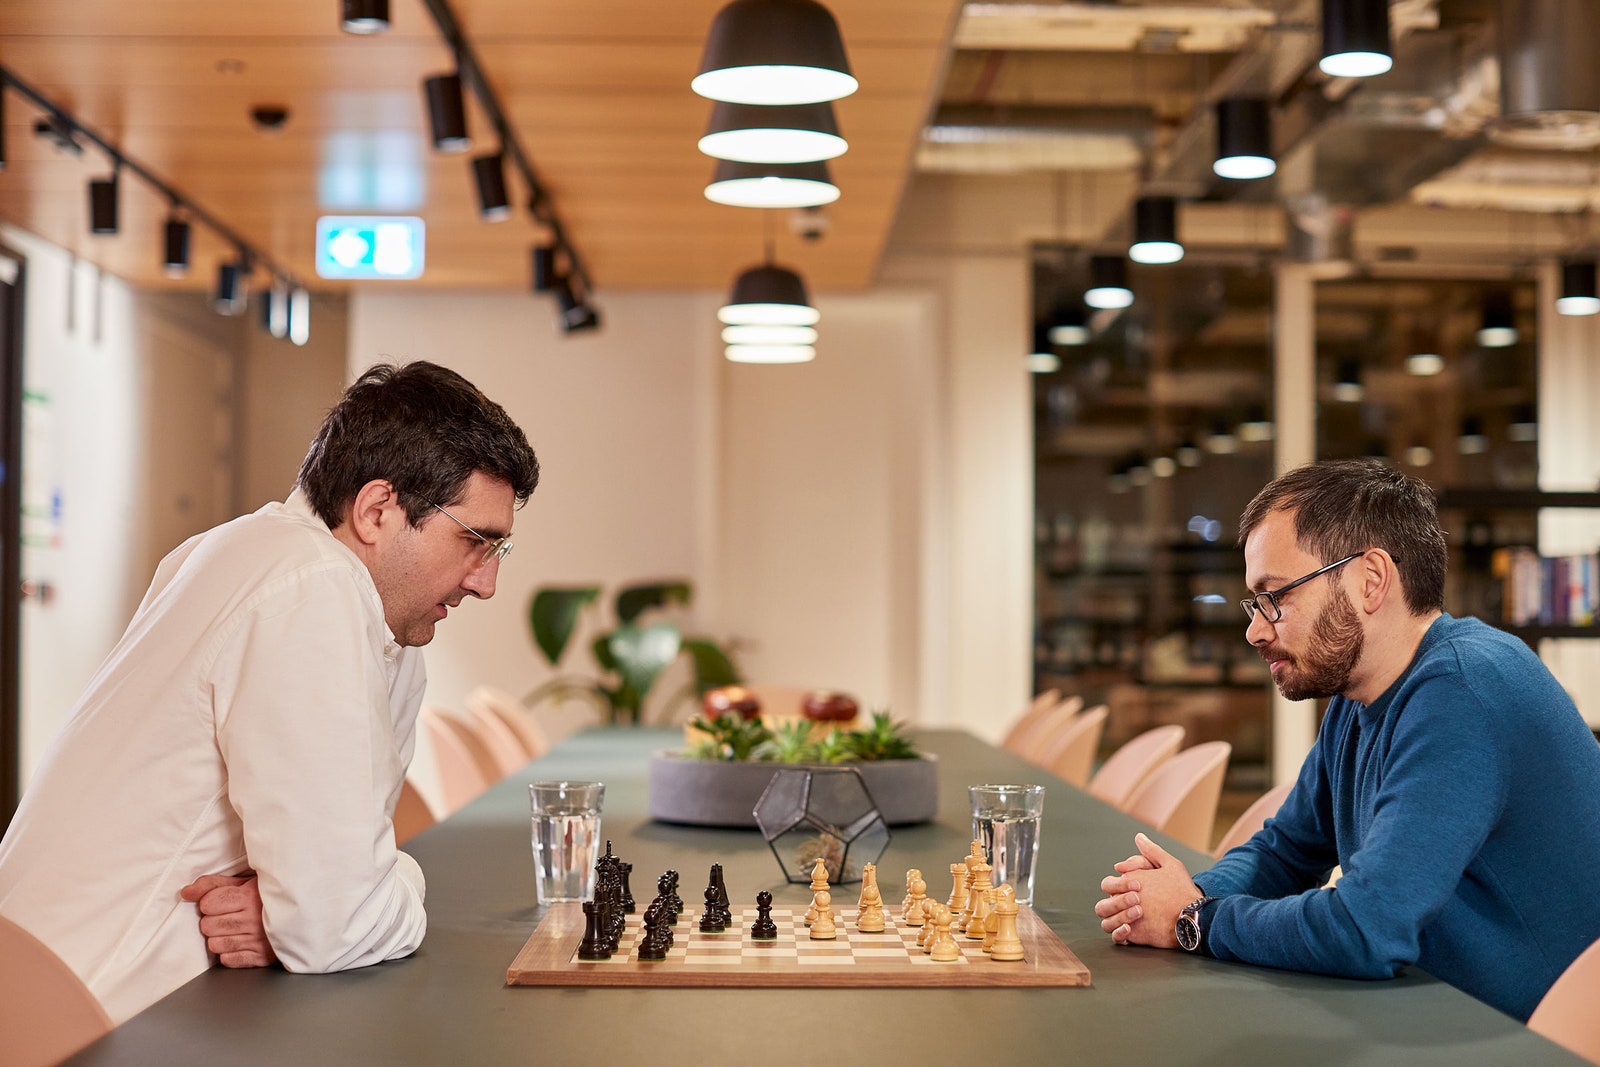 FollowChess News – Pawn-sized chess news that matters!